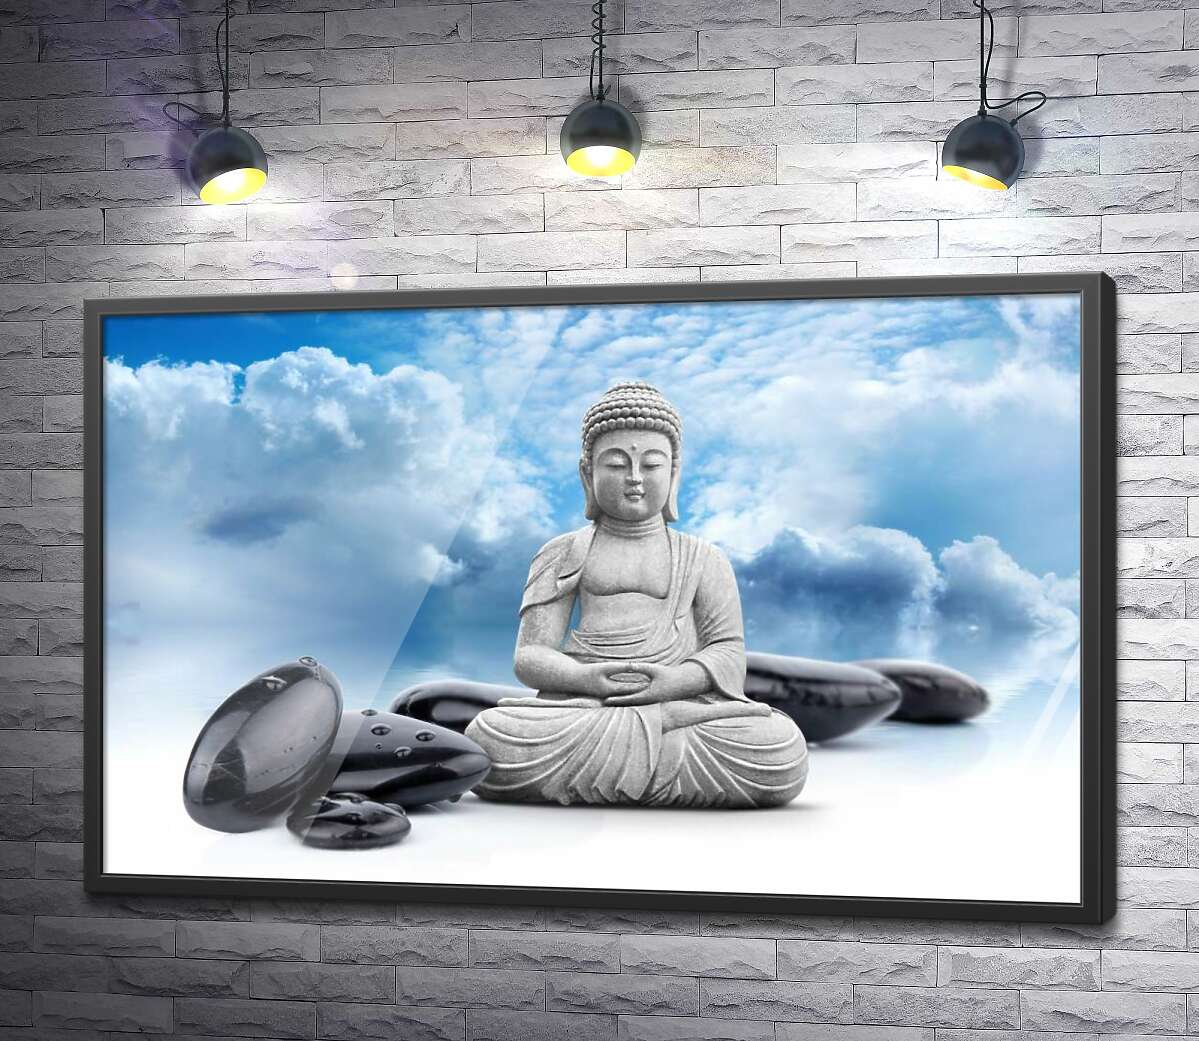 постер Будда в позе лотоса среди черных камней на фоне лазурного неба